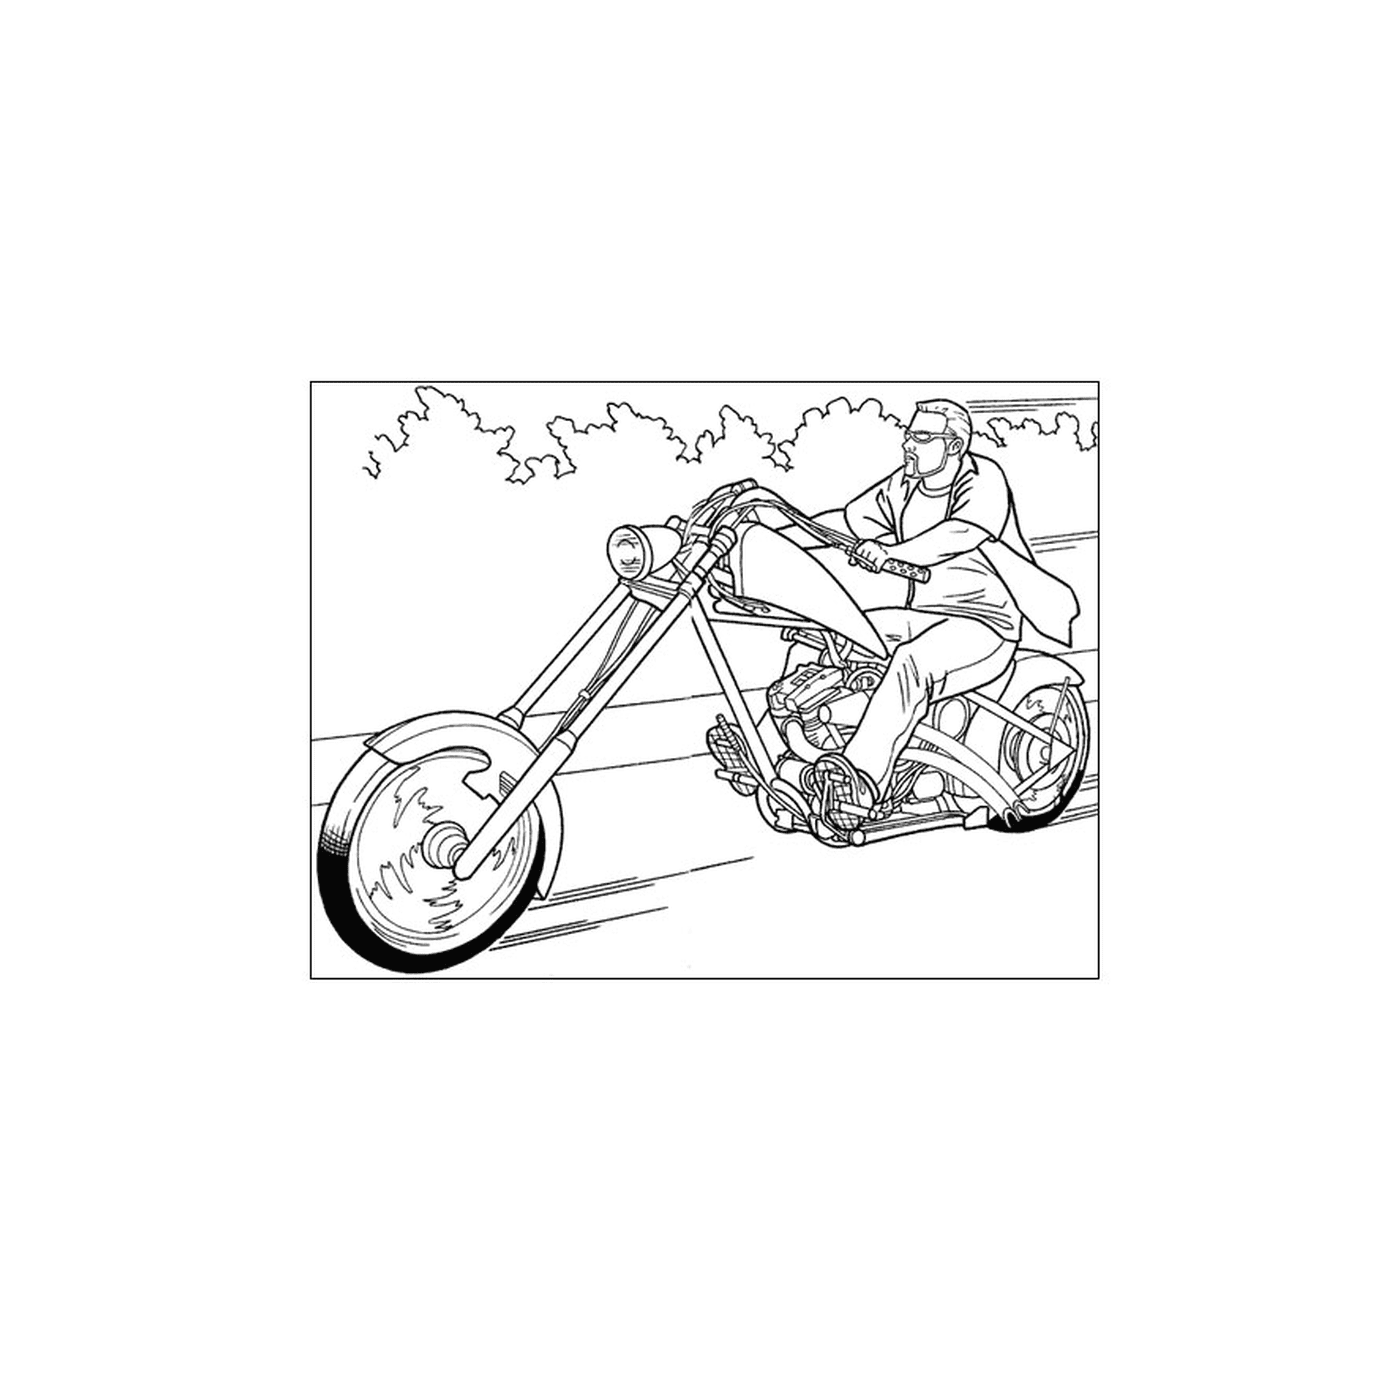  Mann auf einem hinteren Motorrad 